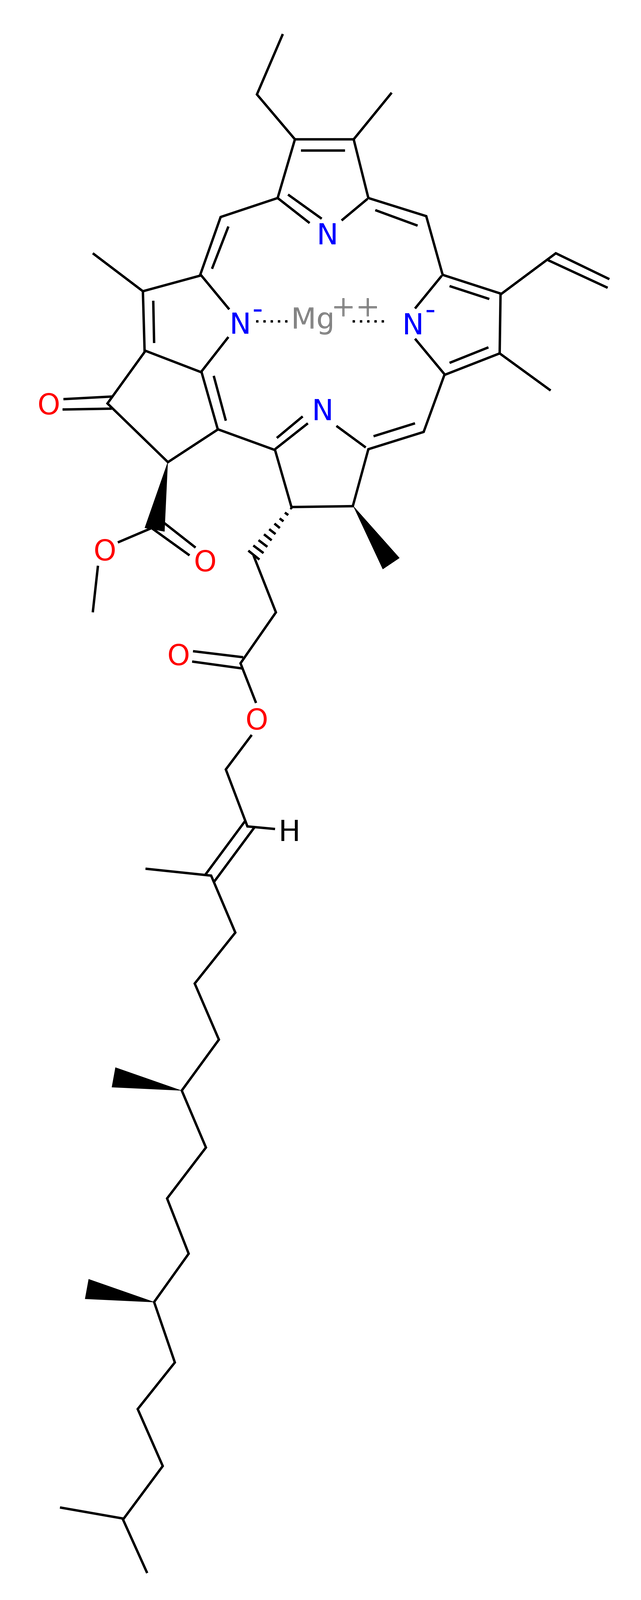 Ilustracja przedstawiająca strukturę chlorofilu A, będącego związkiem kompleksowym. Atom centralny stanowi magnez na drugim stopniu utlenienia. Związany jest on z czterema pierścieniami pirolu, czyli heteroaromatycznymi pięcioczłonowymi pierścieniami z wbudowanym atomem azotu oraz dwoma wiązaniami podwójnymi pomiędzy atomami węgla. Pierścienie pirolowe połączone są ze sobą mostkami metinowymi, to jest grupami CH, od których z jednej strony odchodzi wiązanie pojedyncze, zaś z drugiej podwójne. Pierścienie pirolowe są modyfikowane różnymi grupami, w tym grupami metylowymi, etylowymi, winylowymi, pierścieniem 2‑karkoksylocyklopentanonu metylu, a także łańcuchem fitolowym, to jest 2E,7R,11R-3,7,11,15-tetrametylo‑2-heksadeken‑1-ol.